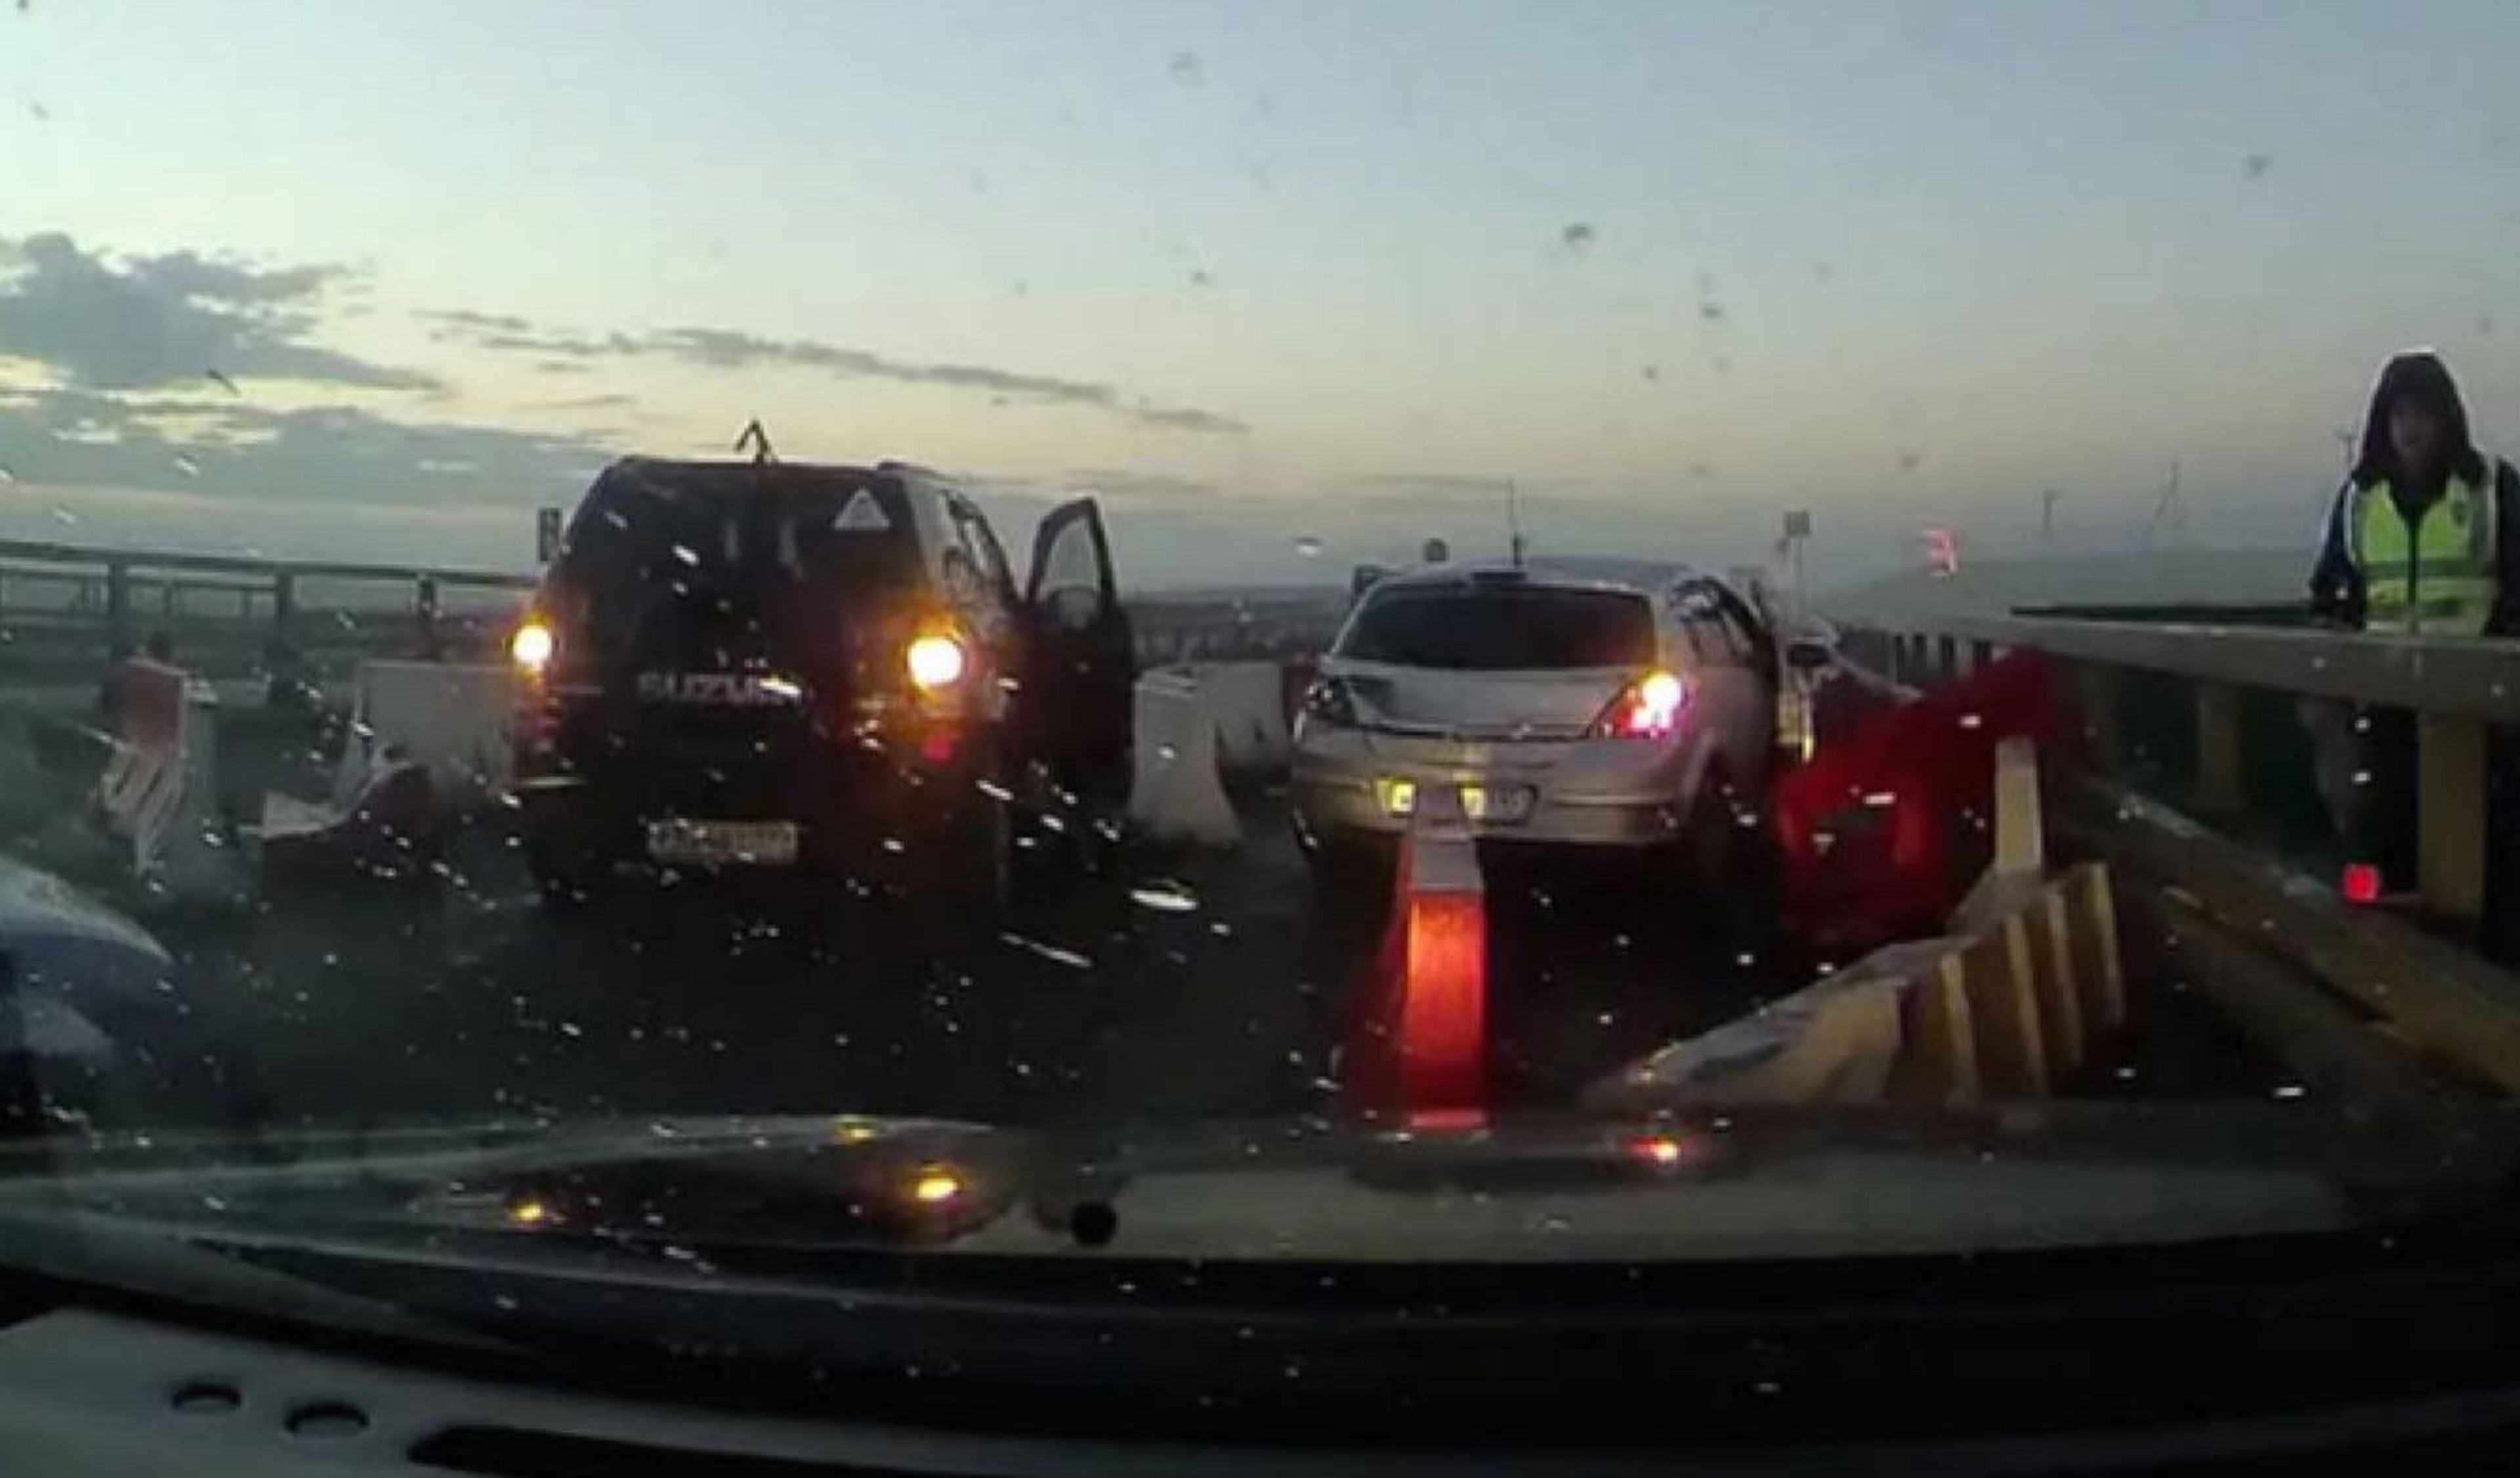 Vídeo: baja visibilidad y obras en carretera, mezcla fatal